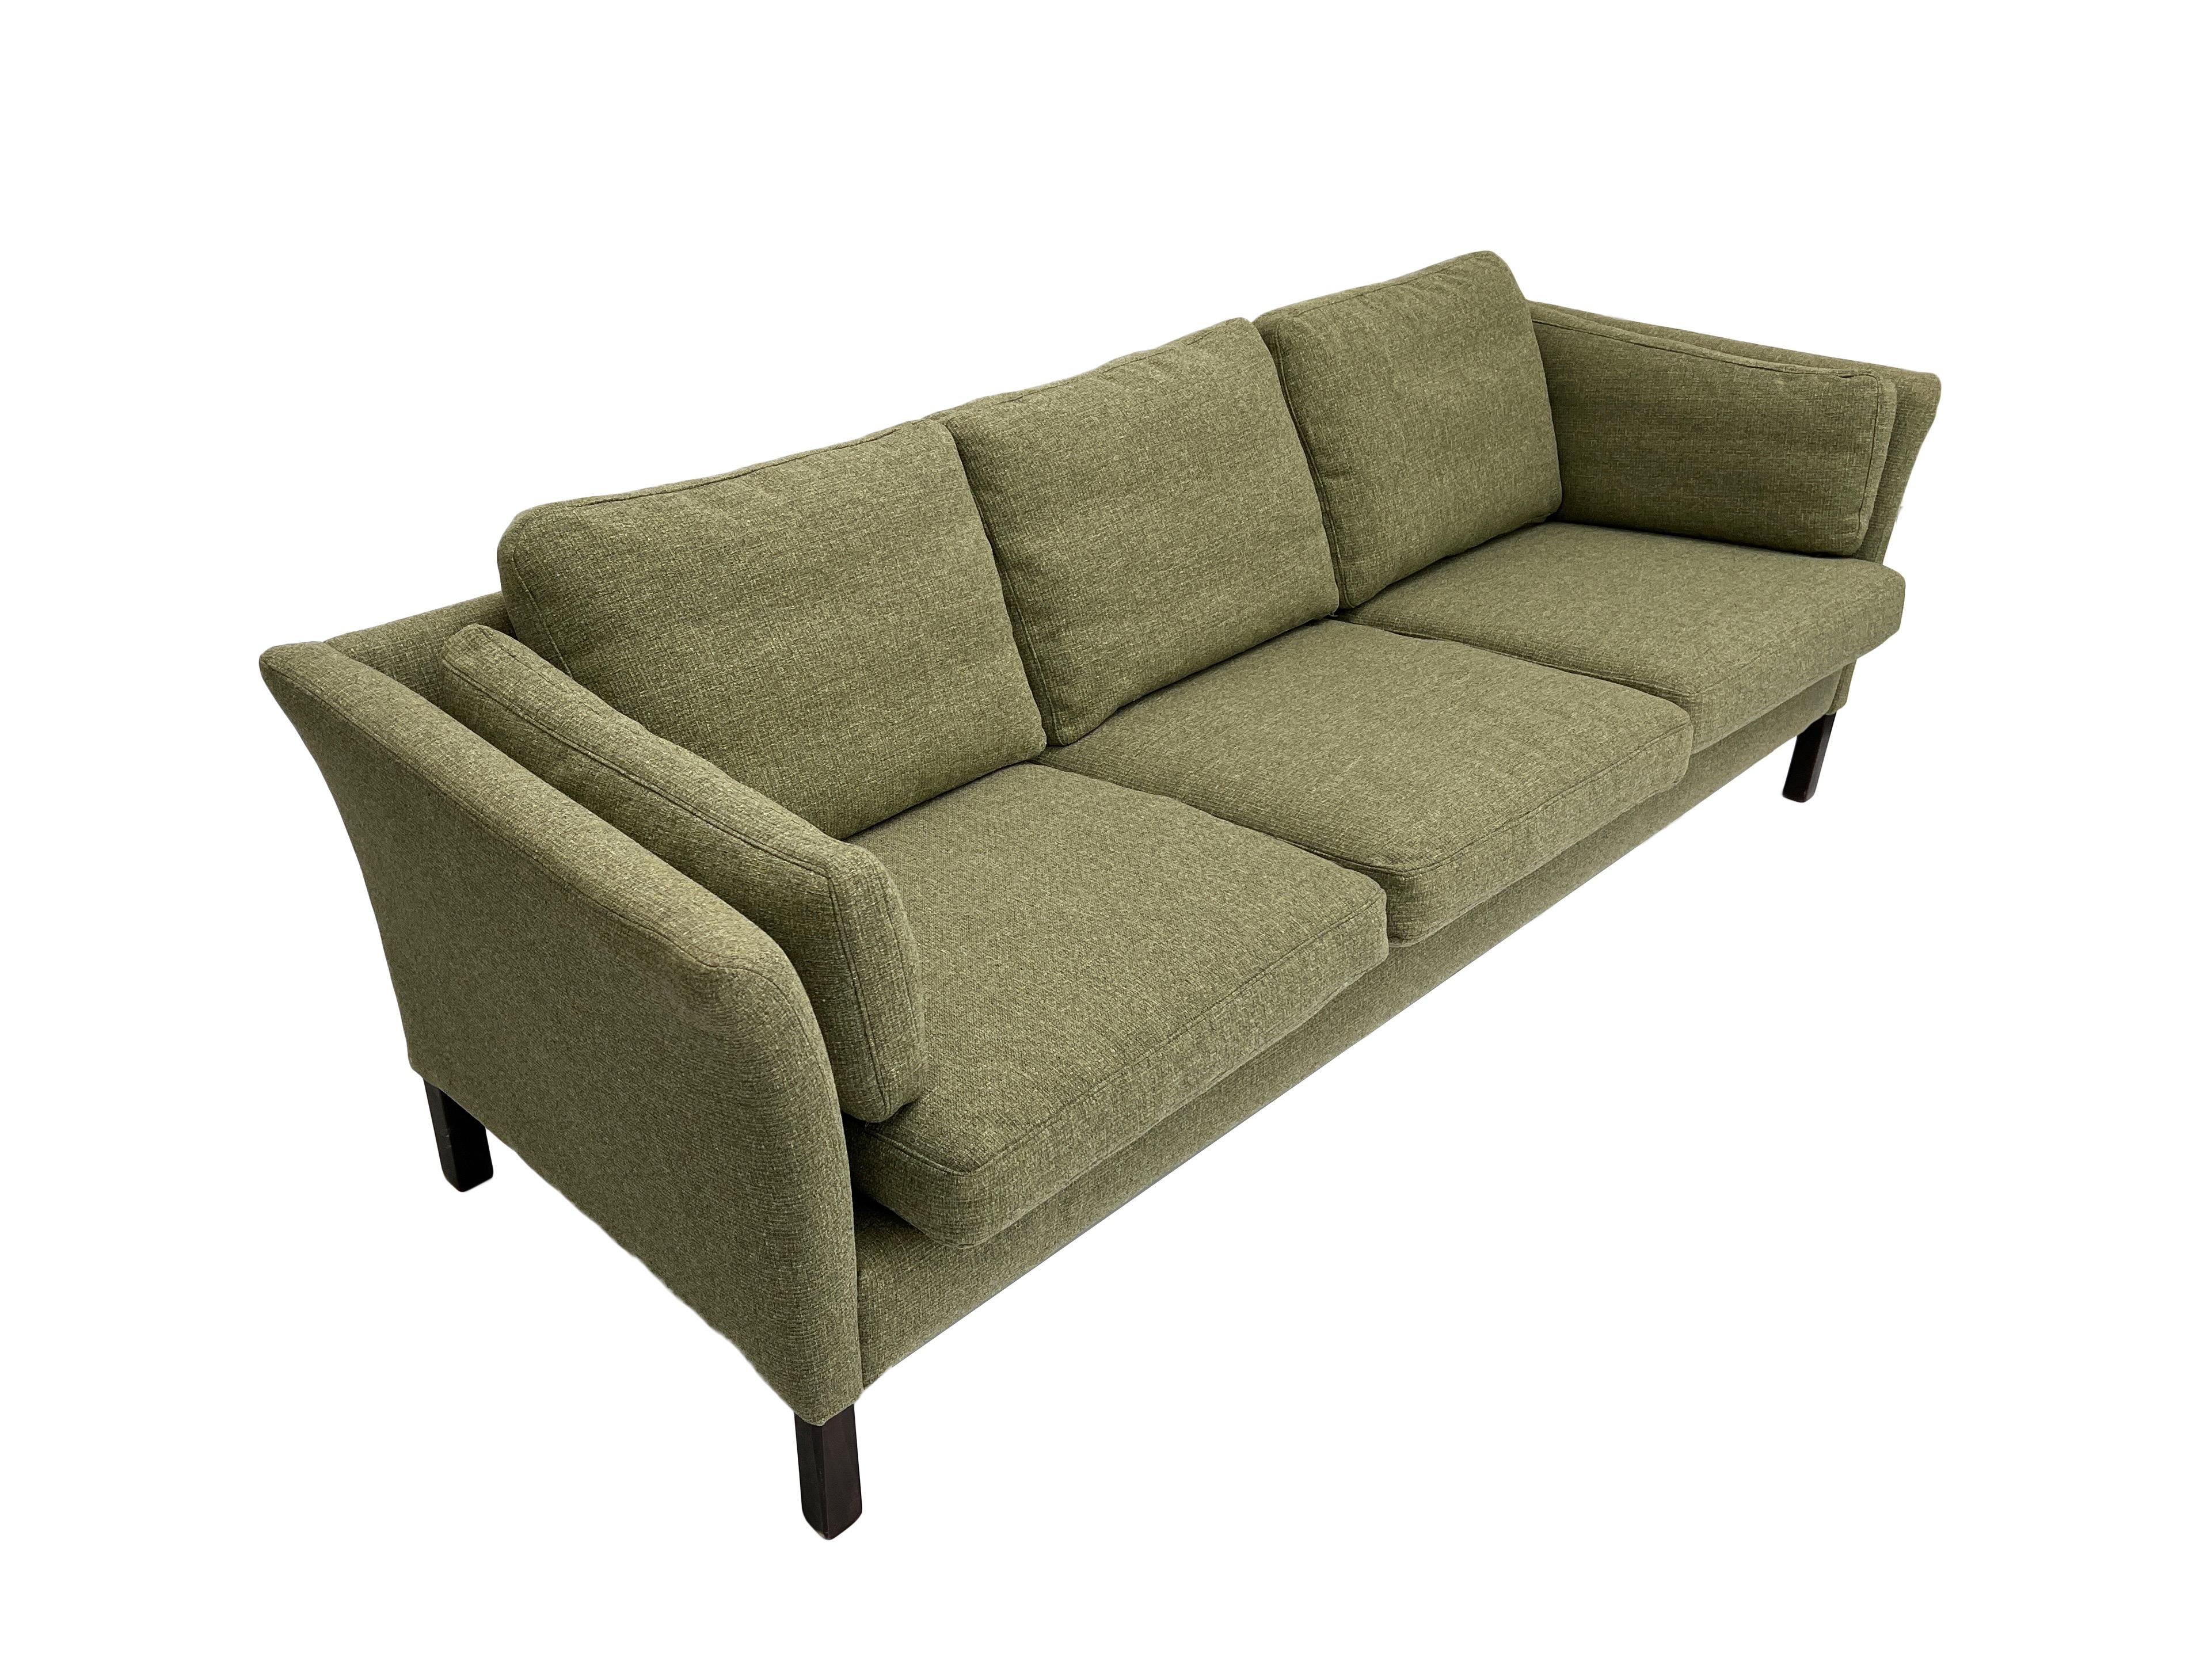 Ce magnifique canapé danois 3 places en laine vert sauge, créé par Sage Hansen, est un ajout élégant à tout espace de vie ou de travail.

Le canapé est doté de larges assises et d'accoudoirs paddés pour un meilleur confort. Un meuble scandinave